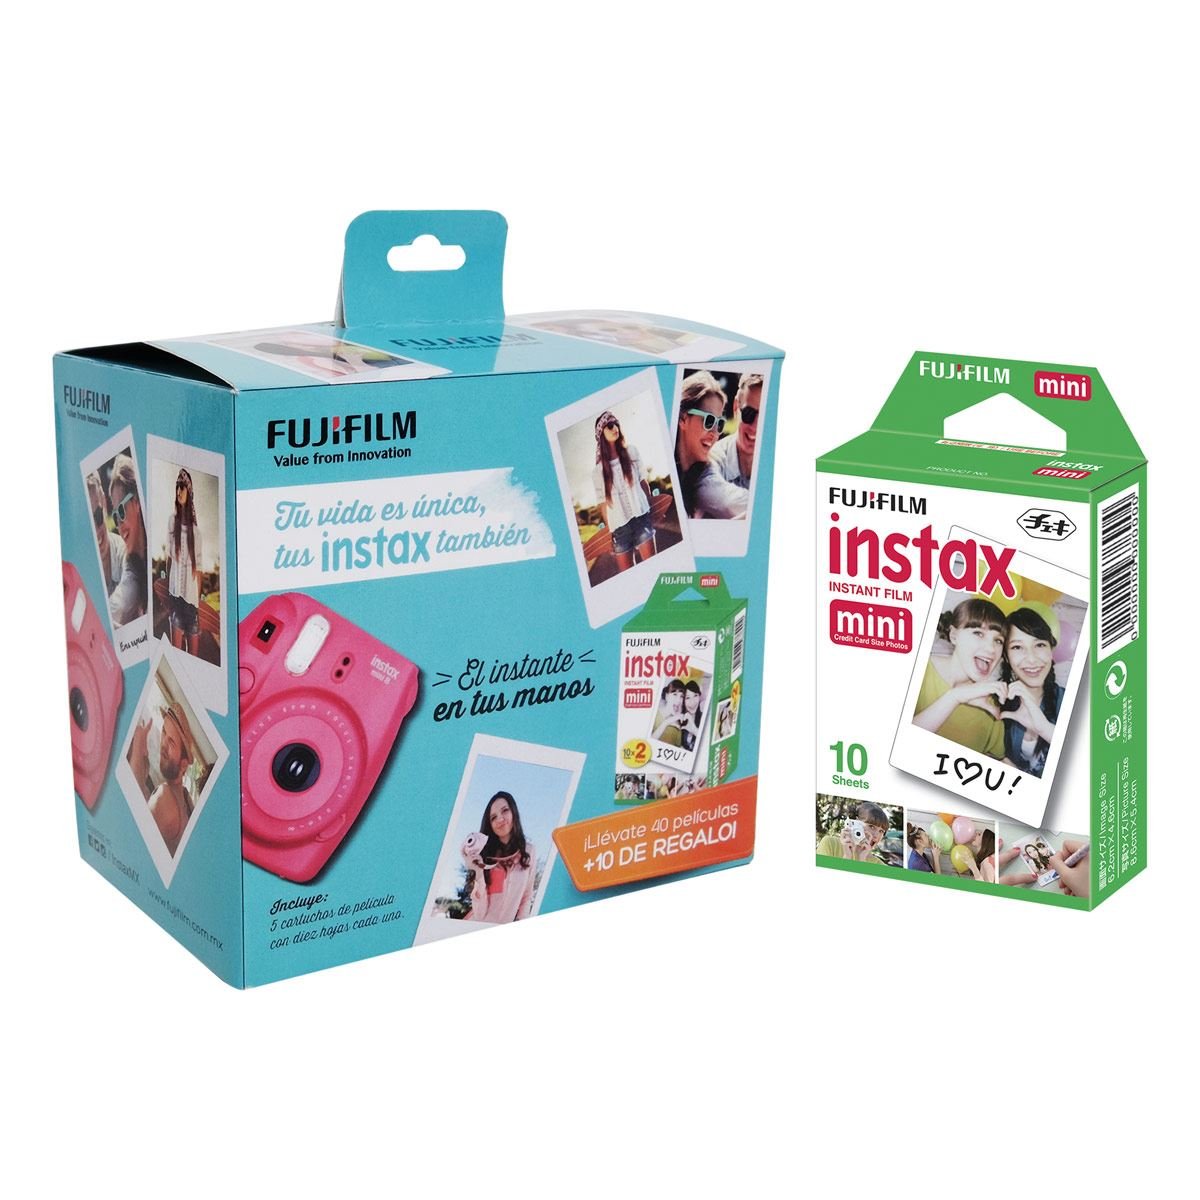 Fujifilm Instax Mini 9 – Cámara instantánea funda personalizada paquete con  50 hojas de papel fotográfico Fujifilm Instax álbum de fotos para